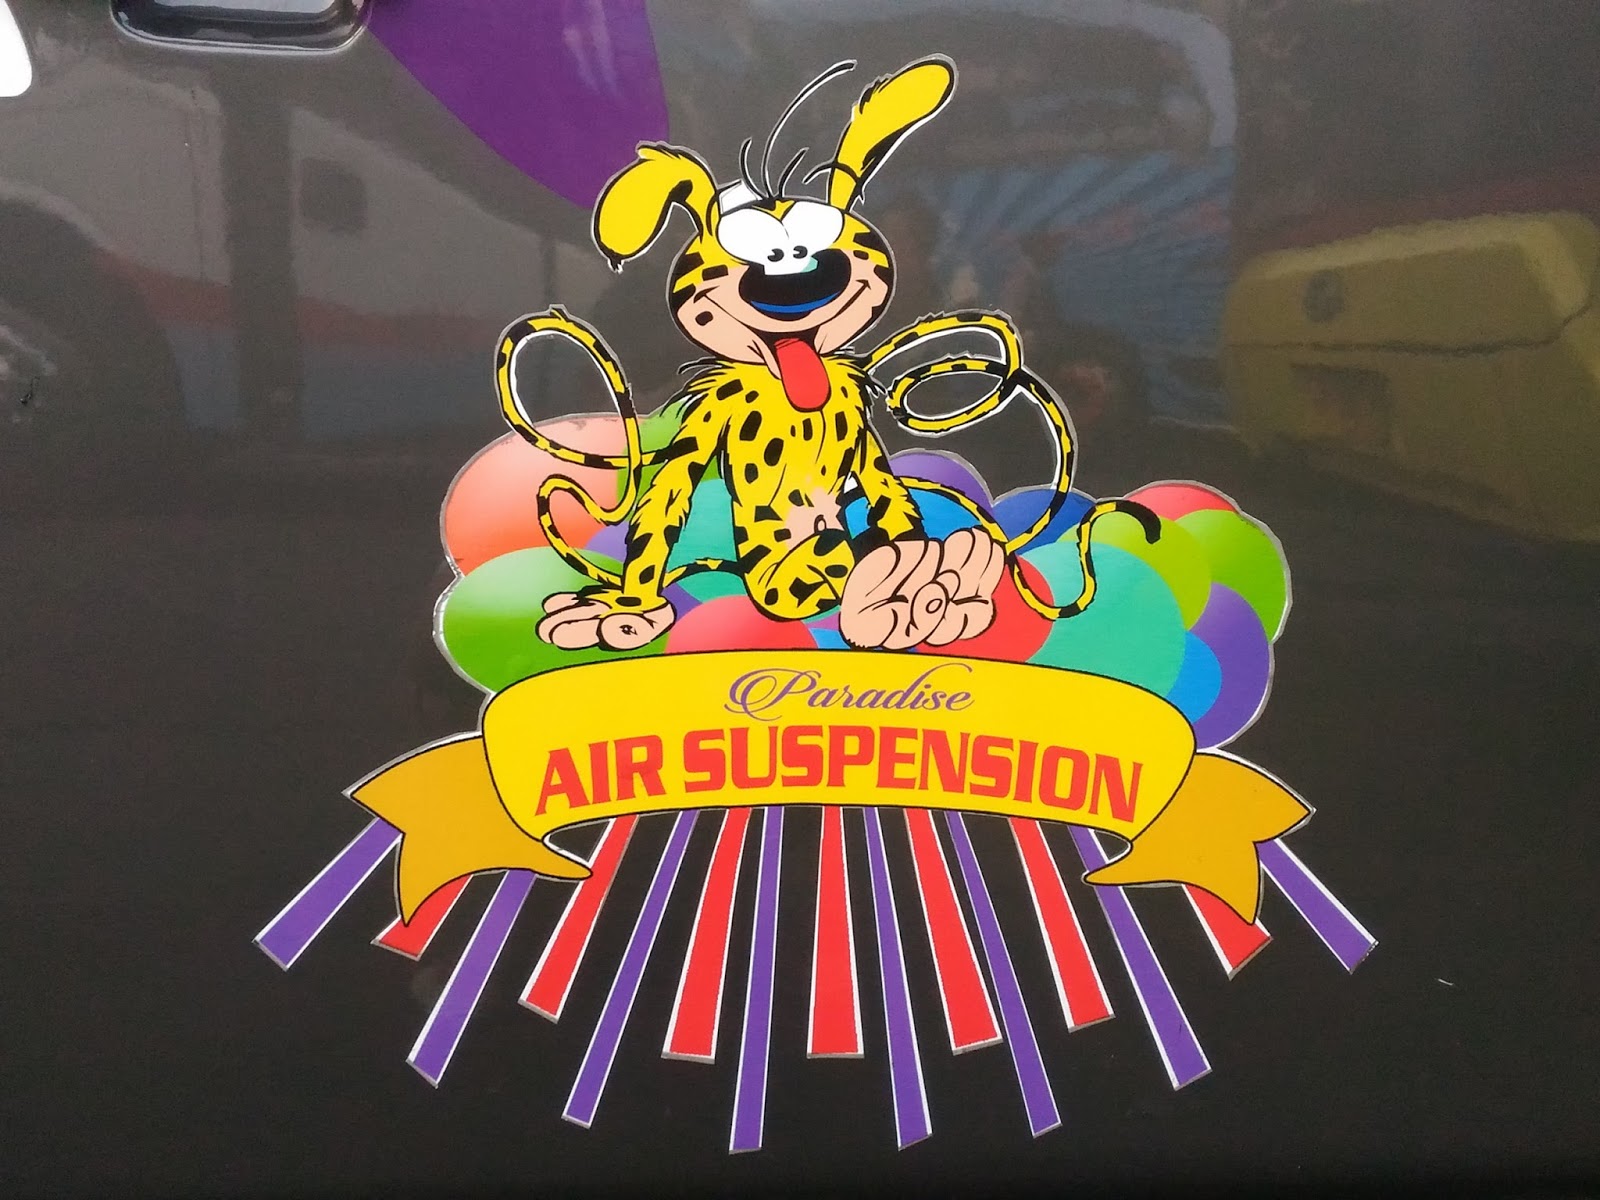 Kupas Tuntas Air Suspension,Stiker Yang Sering Ditempelkan Pada Bus AKAP